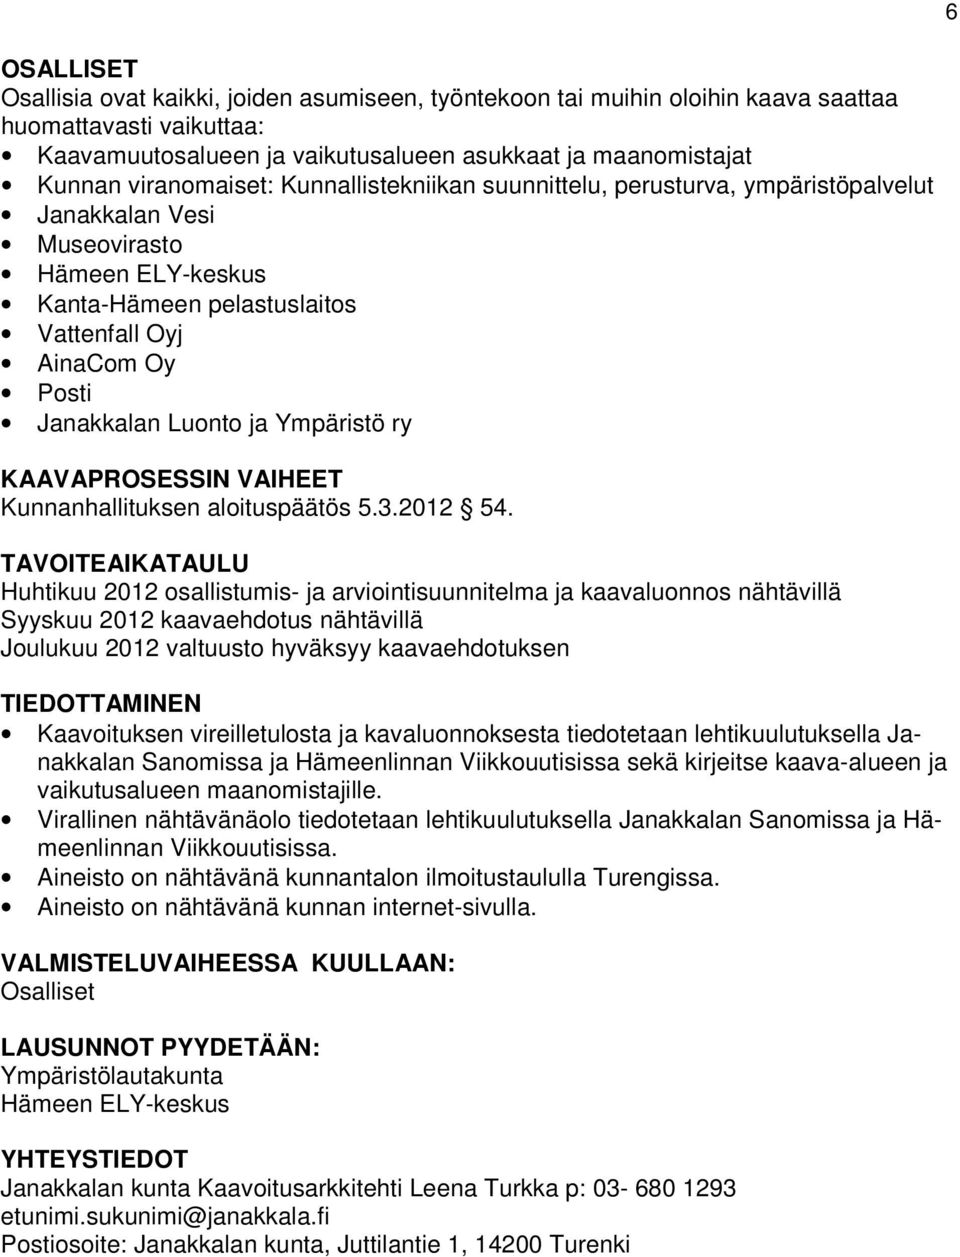 Luonto ja Ympäristö ry KAAVAPROSESSIN VAIHEET Kunnanhallituksen aloituspäätös 5.3.2012 54.